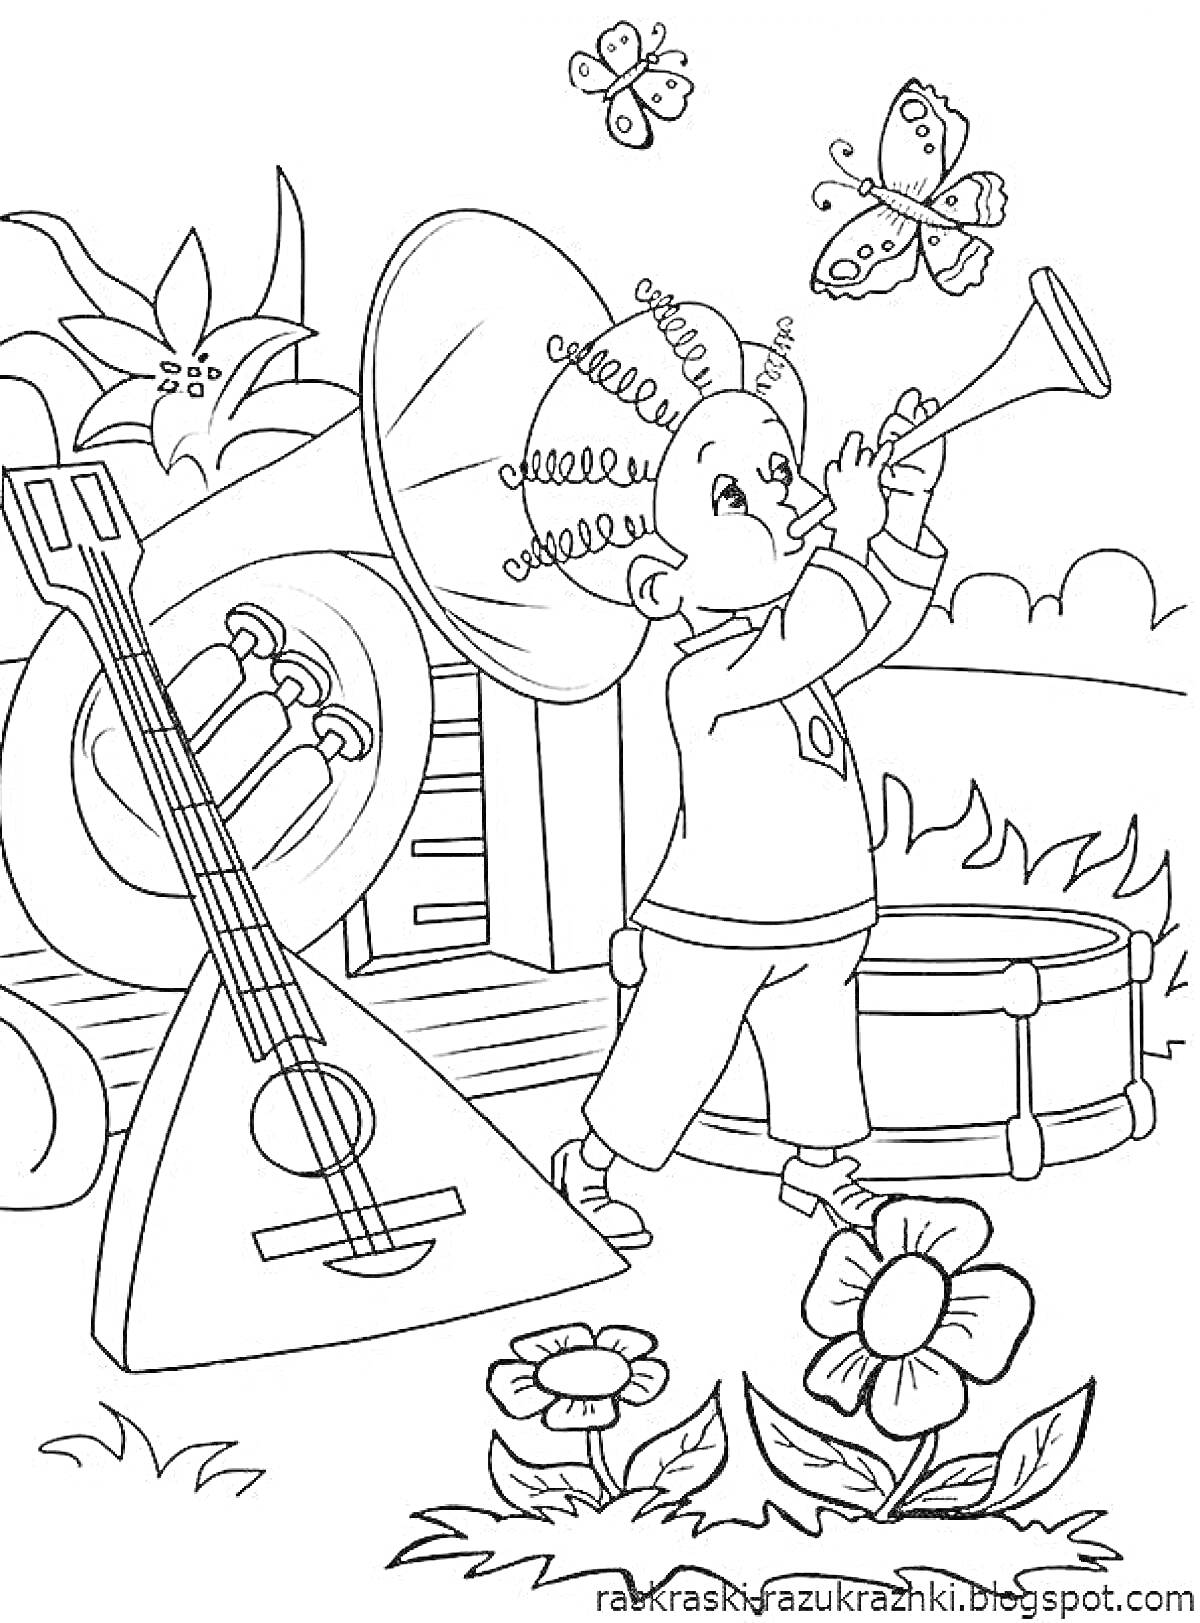 Раскраска Мальчик с духовым инструментом, балалайка, барабан, цветы, бабочки